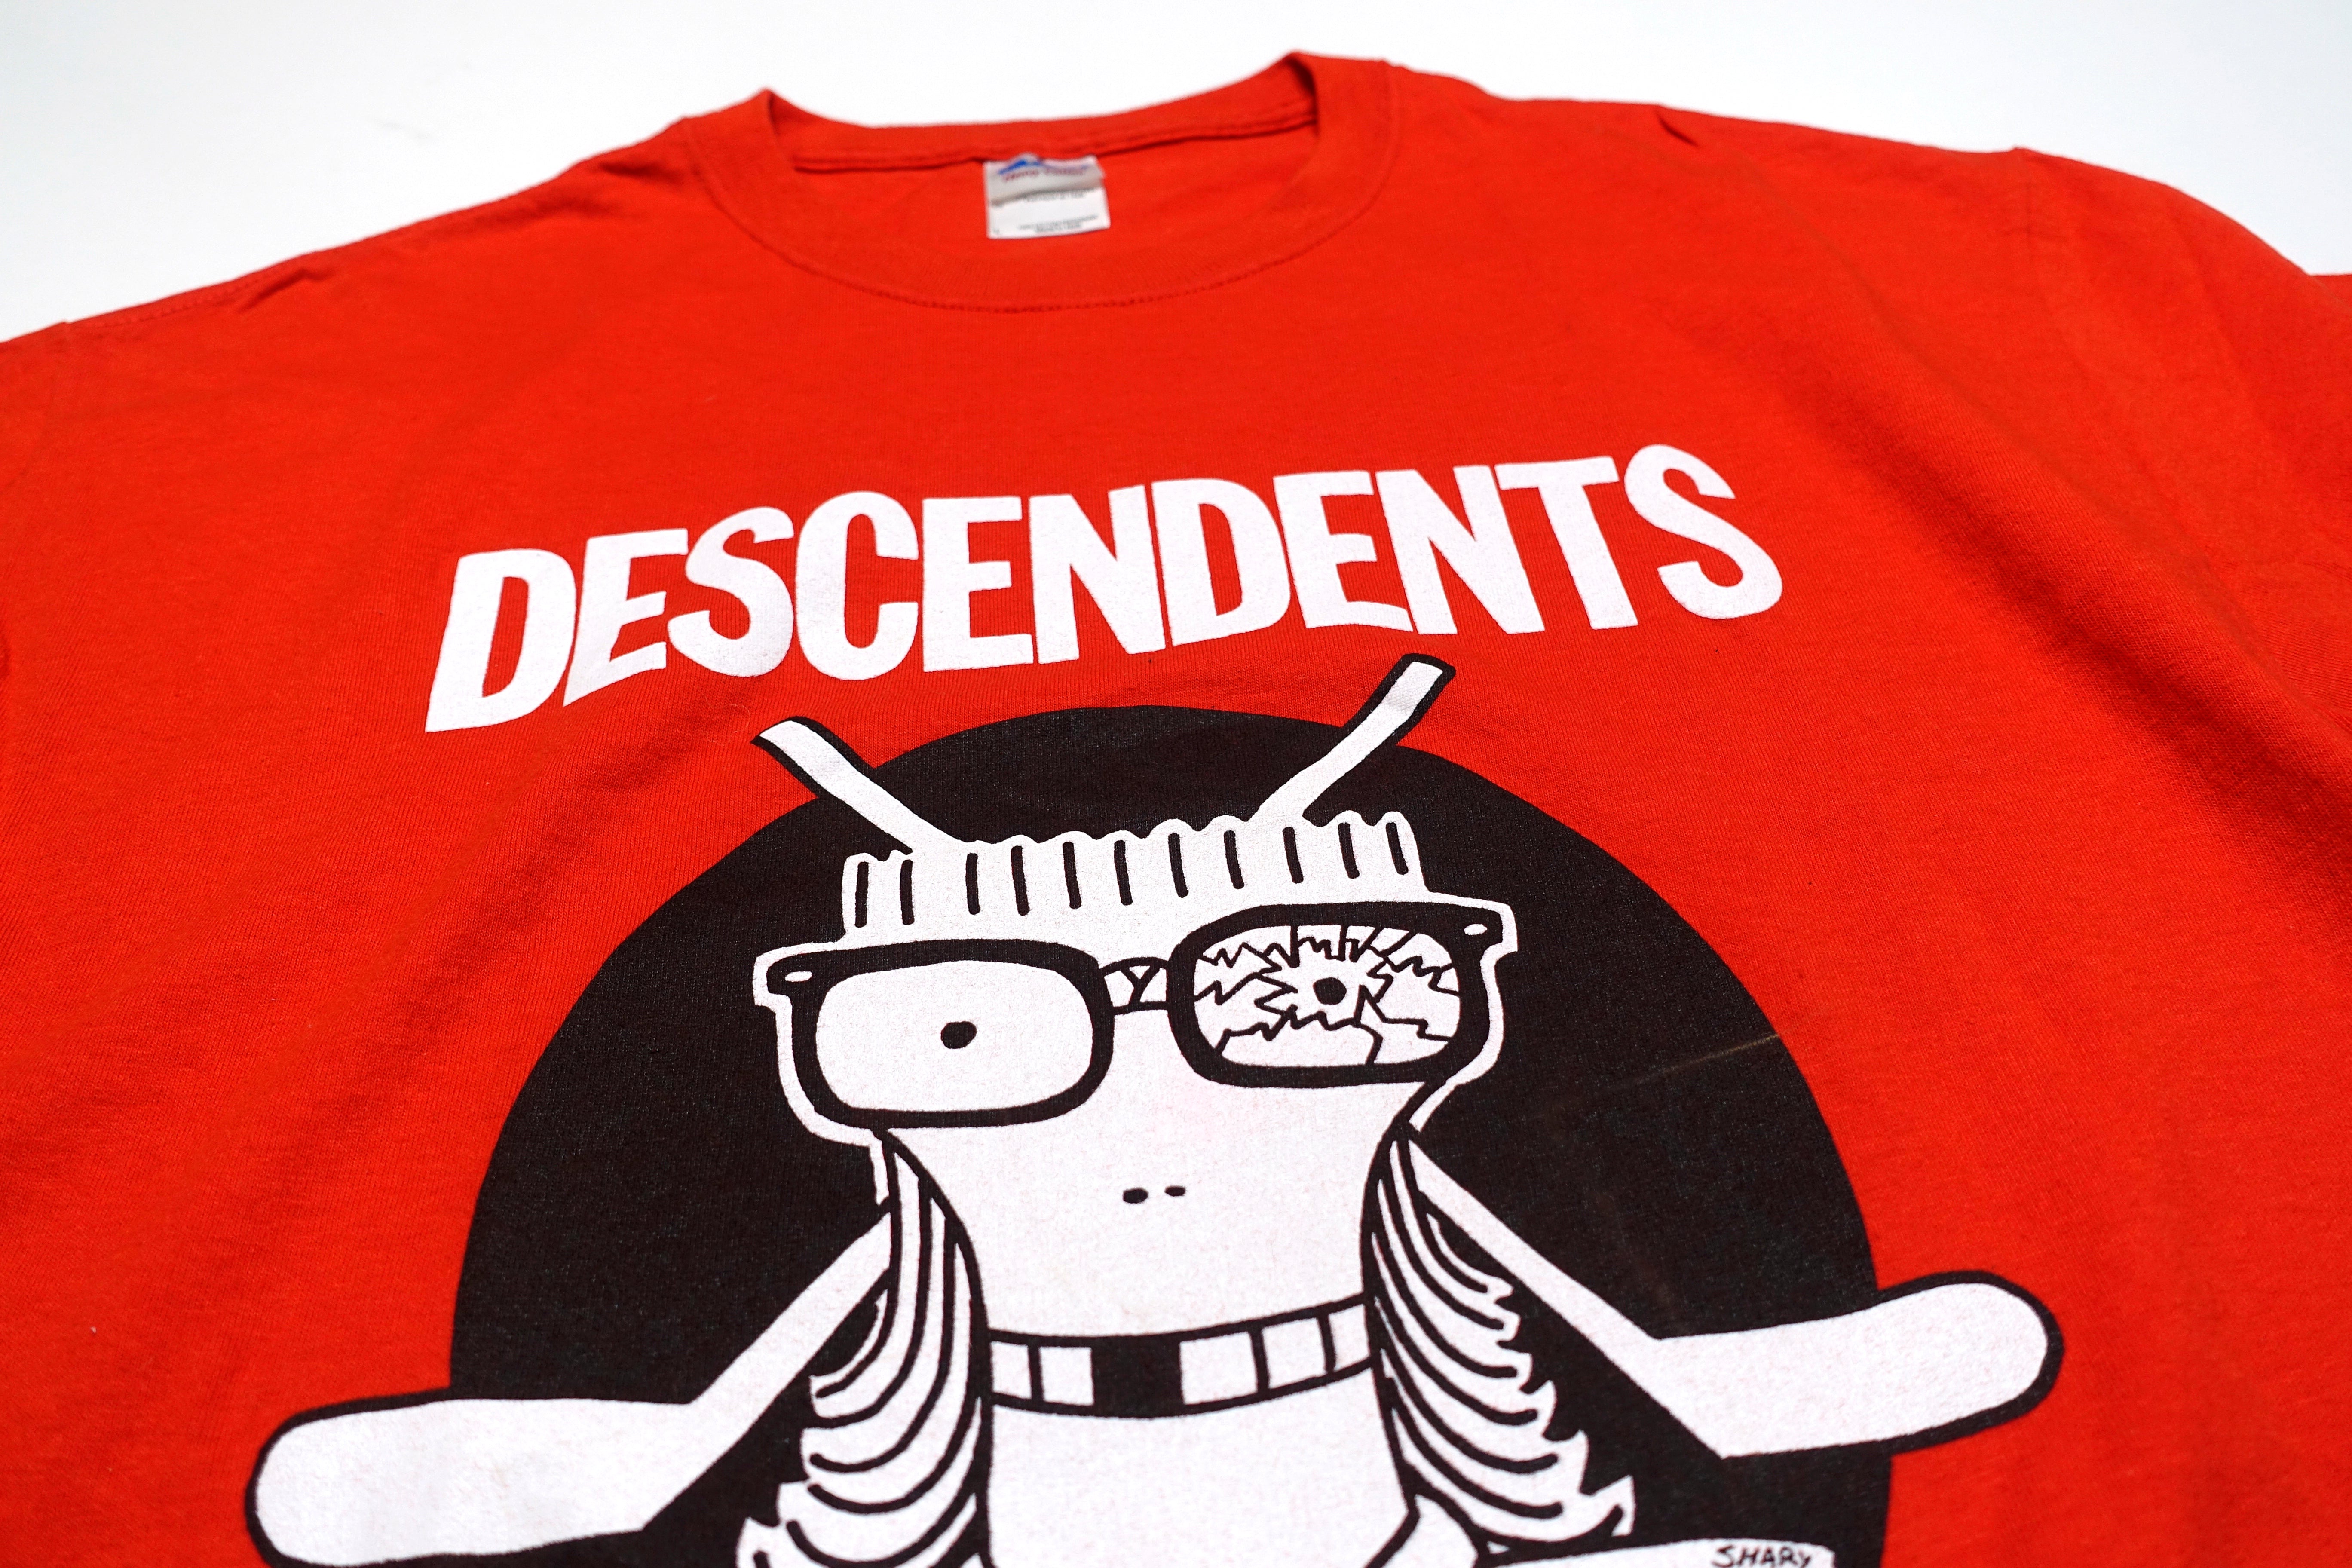 Descendents - Toronto 2012 Tour Shirt Size Large